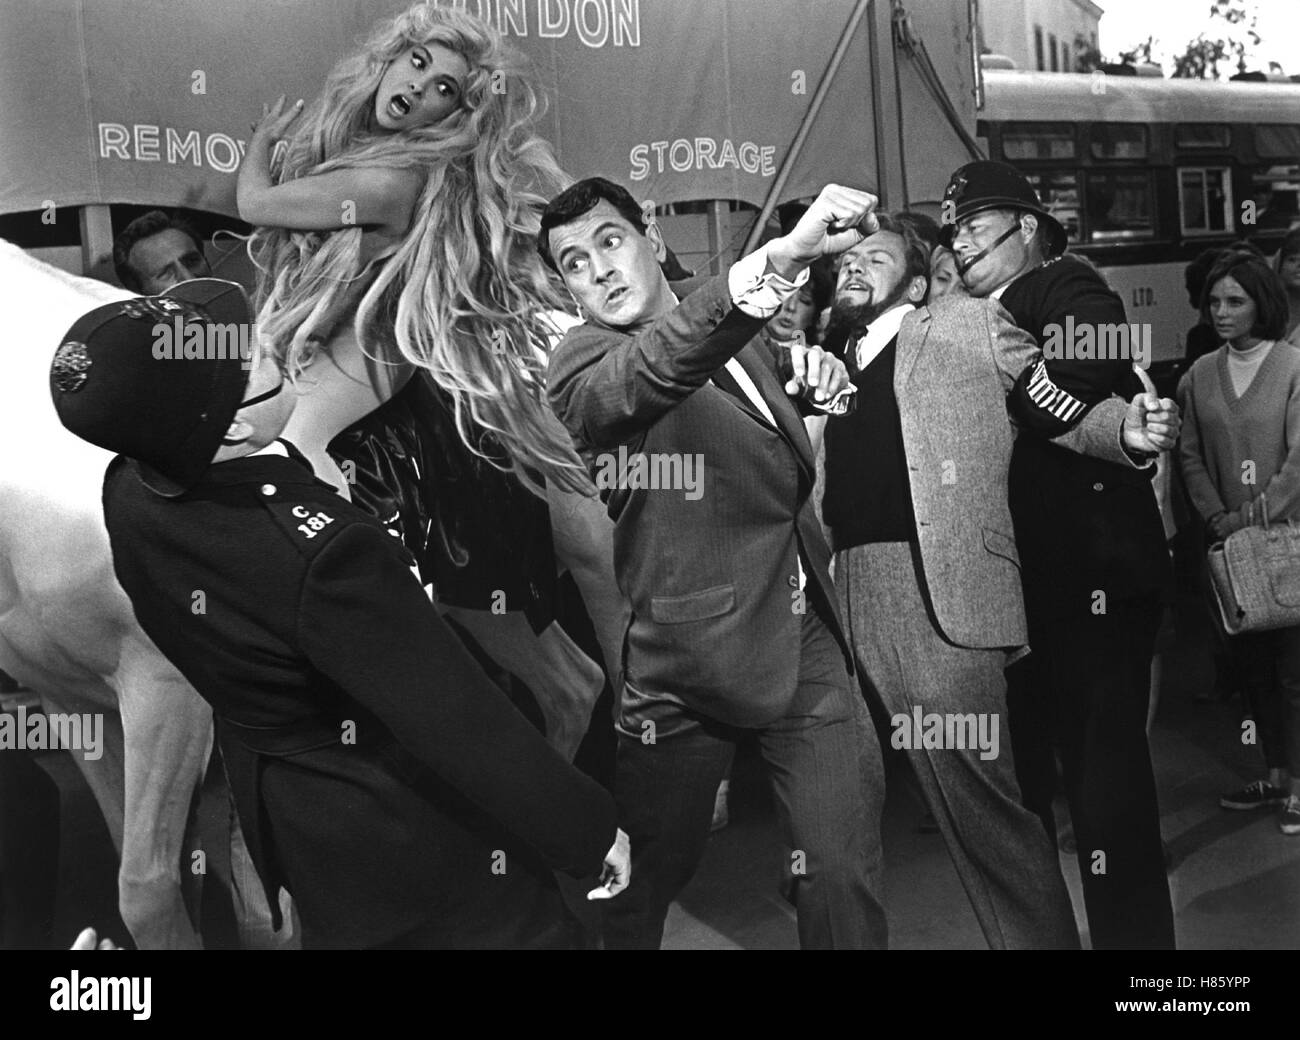 Fremde Bettgesellen, (strano BEDFELLOWS) USA 1964, Regie: Melvin Frank, Gina Lollobrigida, Rock Hudson, Stichwort: Schlägerei, Polizisten, Blondine Foto Stock